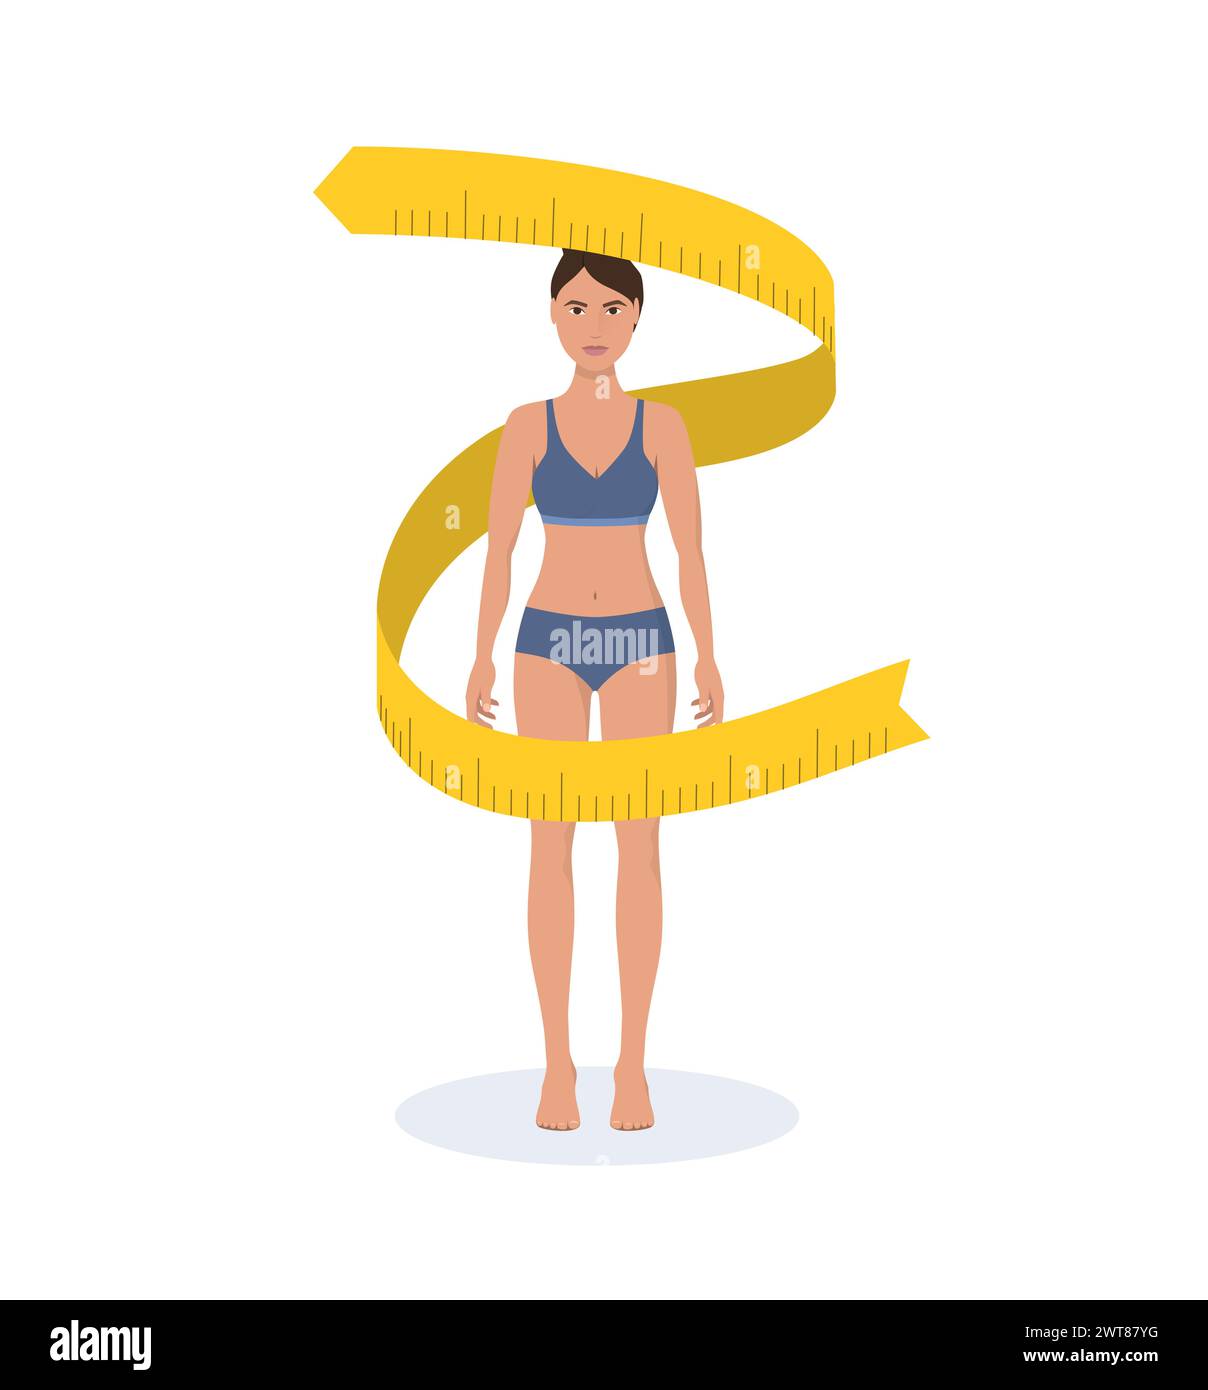 Fette und dünne Frauen-Gewichtsreduktion-Konzept. Ernährung und Fitness. Vor und nach Körperform, das Mädchen misst ihre schlanke Taille. Stock Vektor